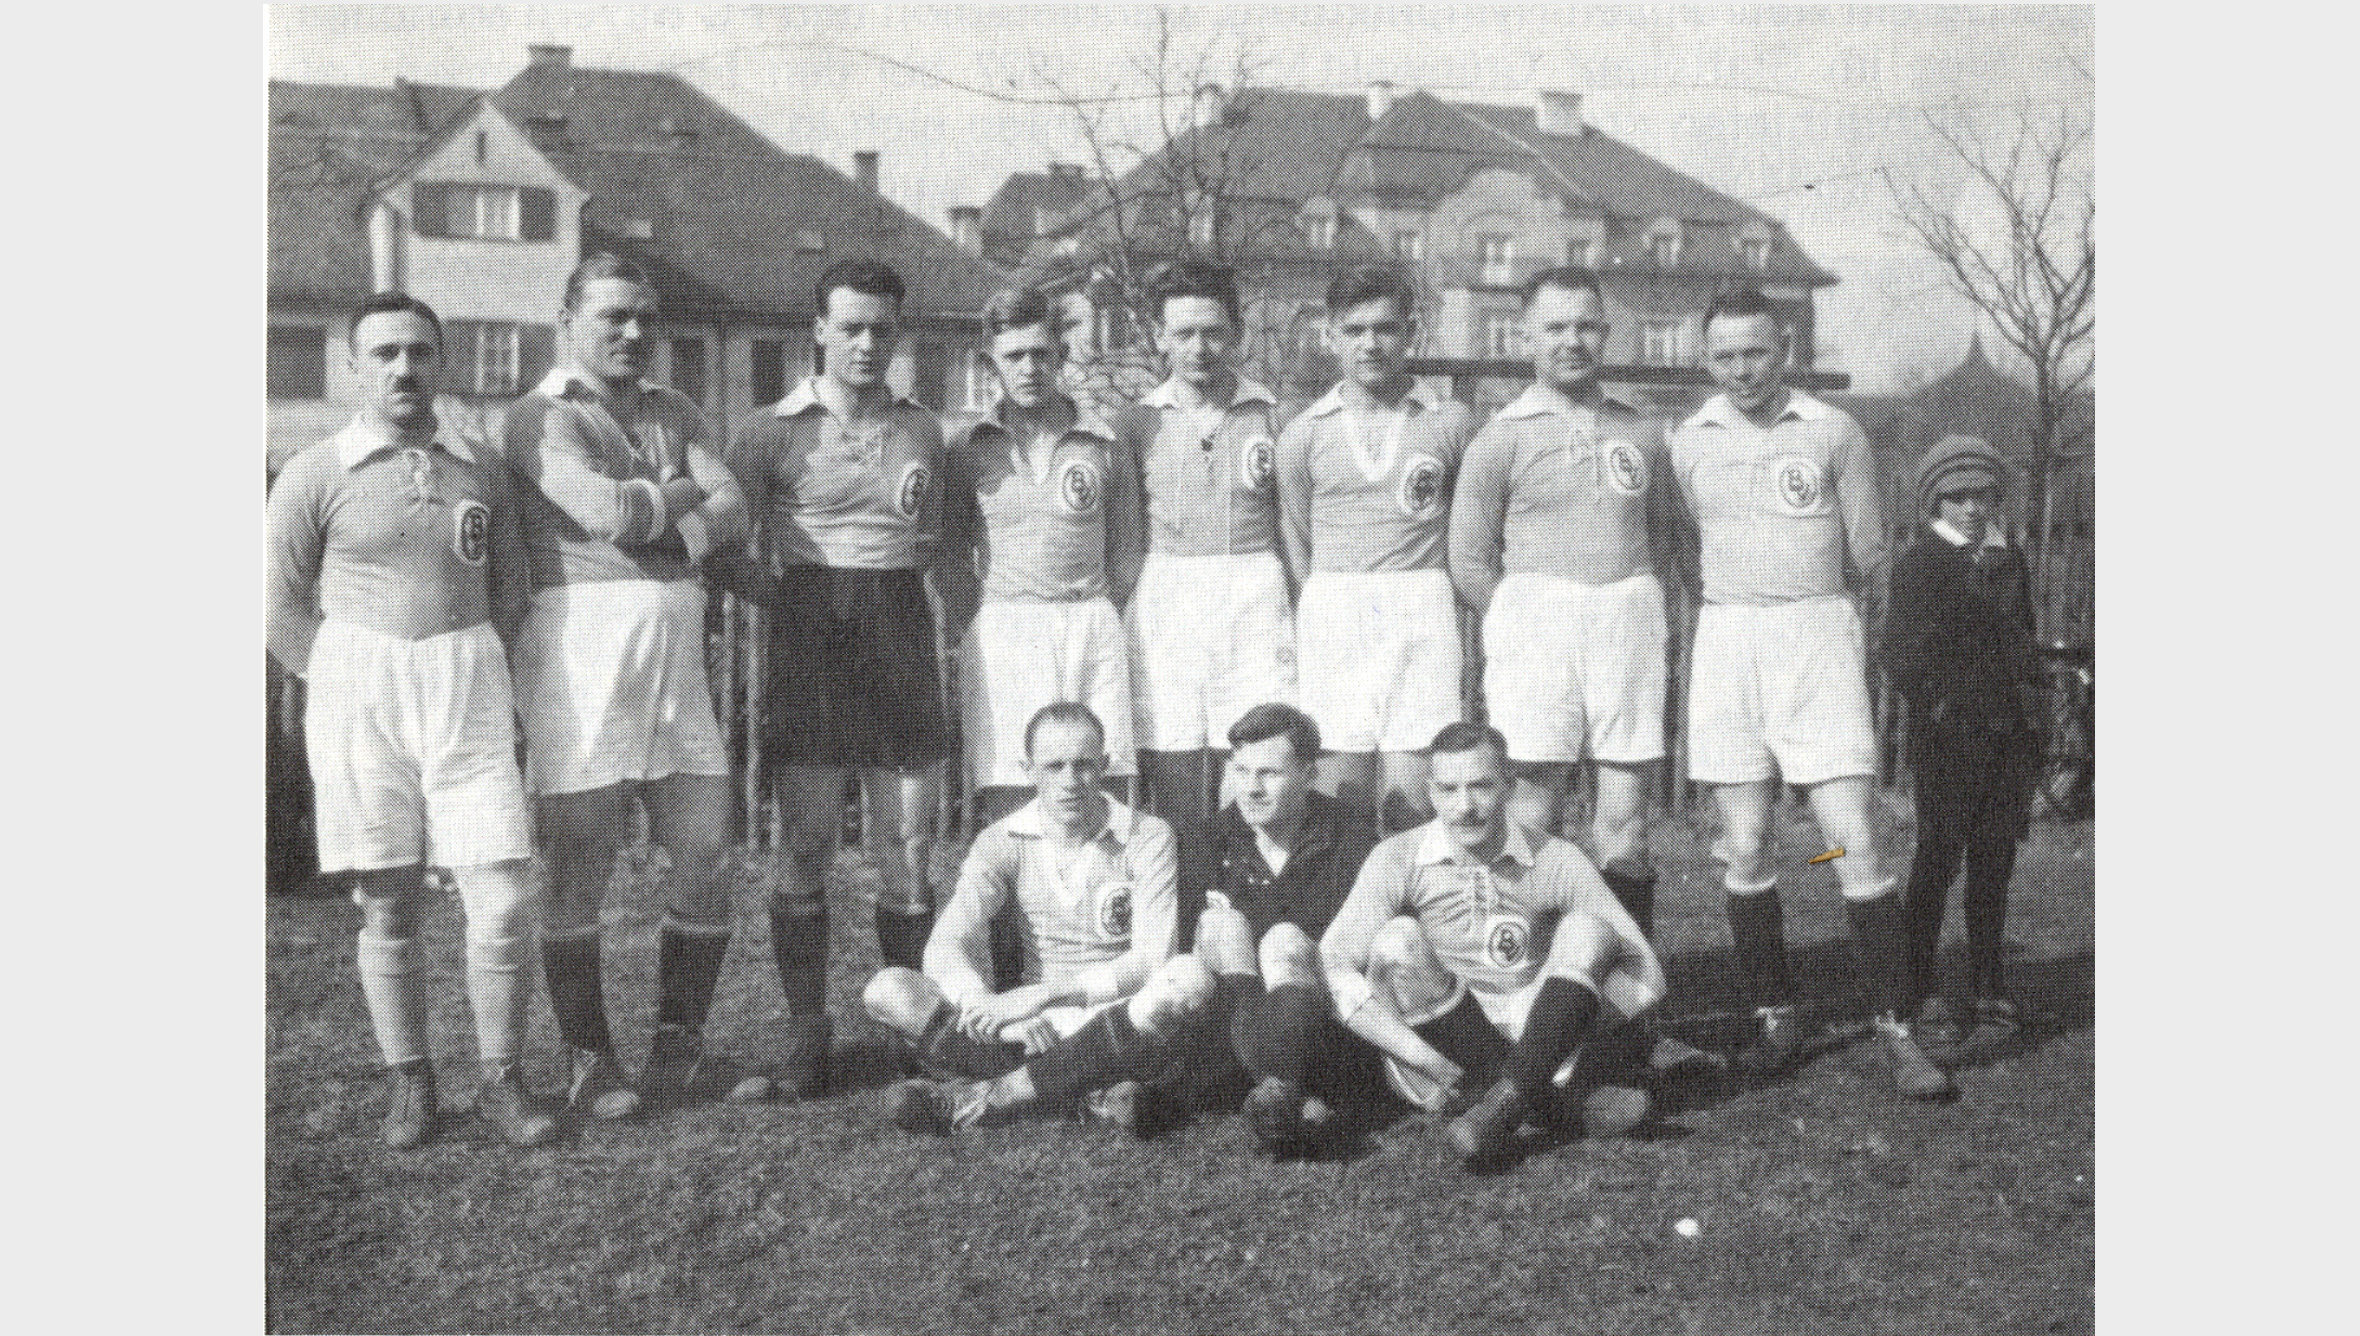 Der BV-Sportclub, einer der Vorgänger des HVB Clubs, stärkte seit 1926 den Zusammenhalt unter den Mitarbeitern.